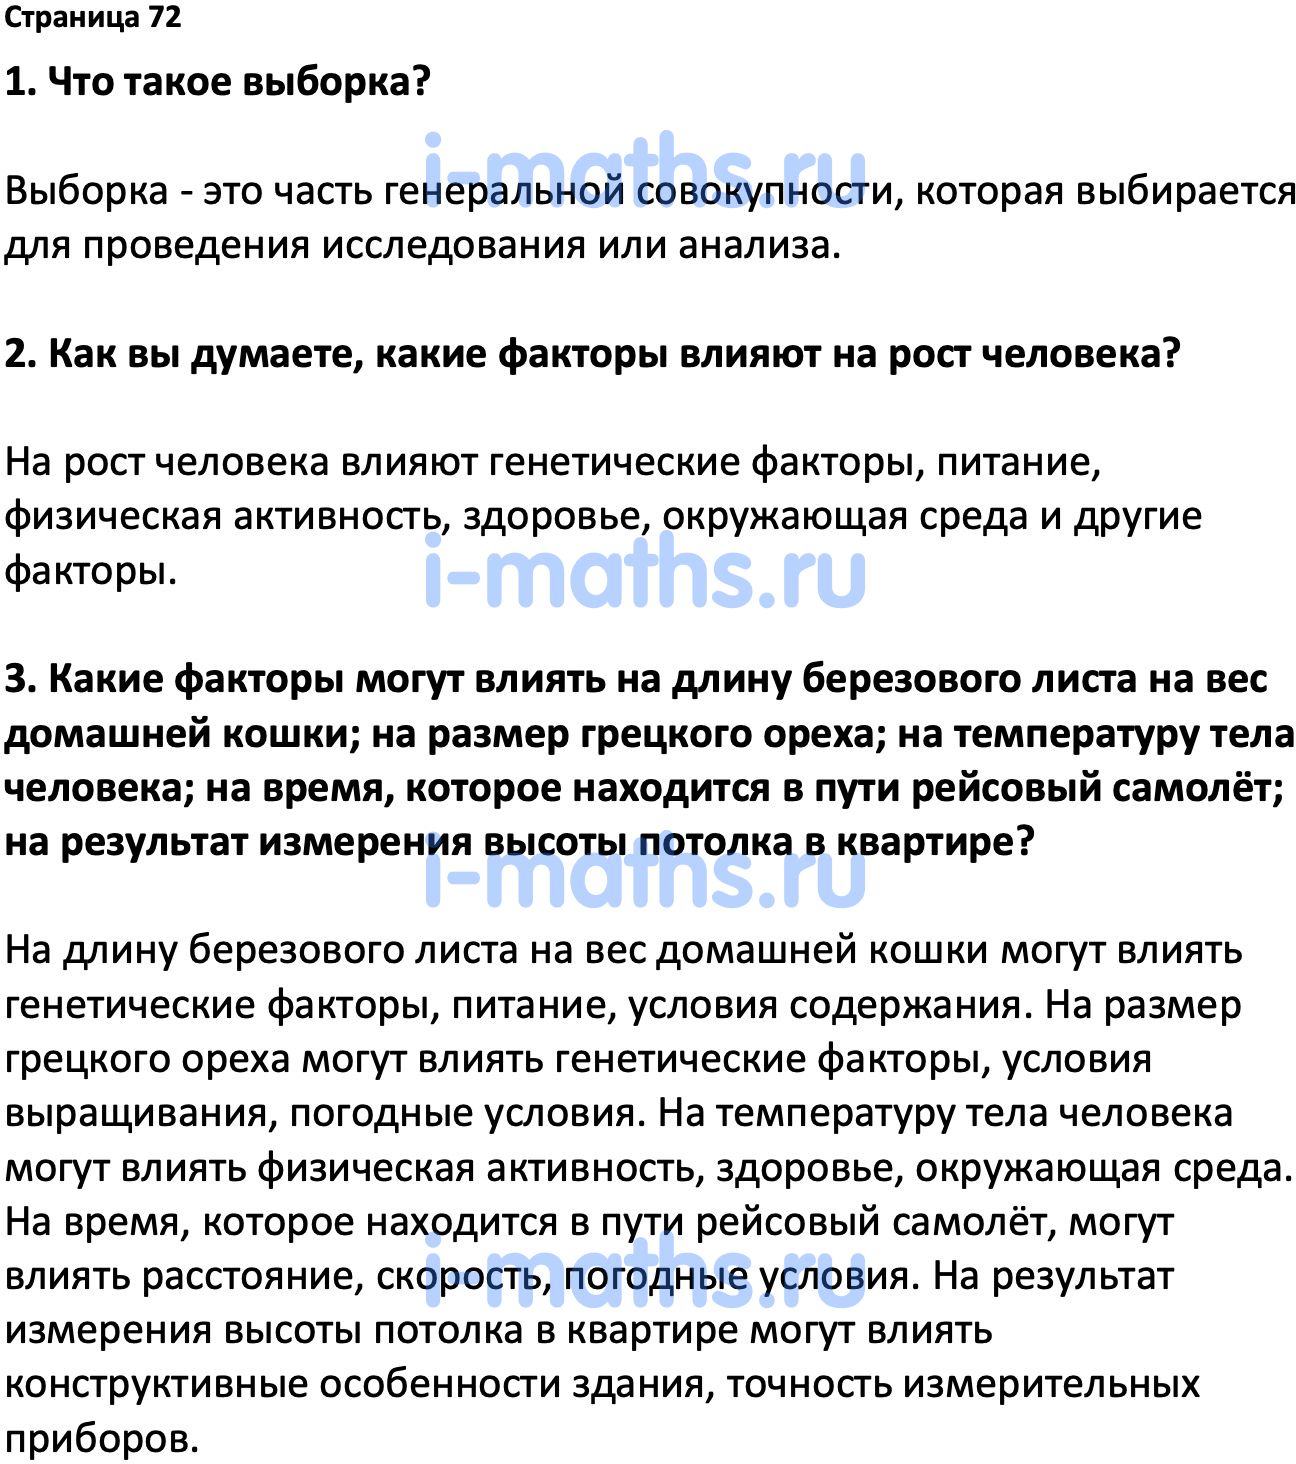 История россии 6 класс стр 72 вопросы